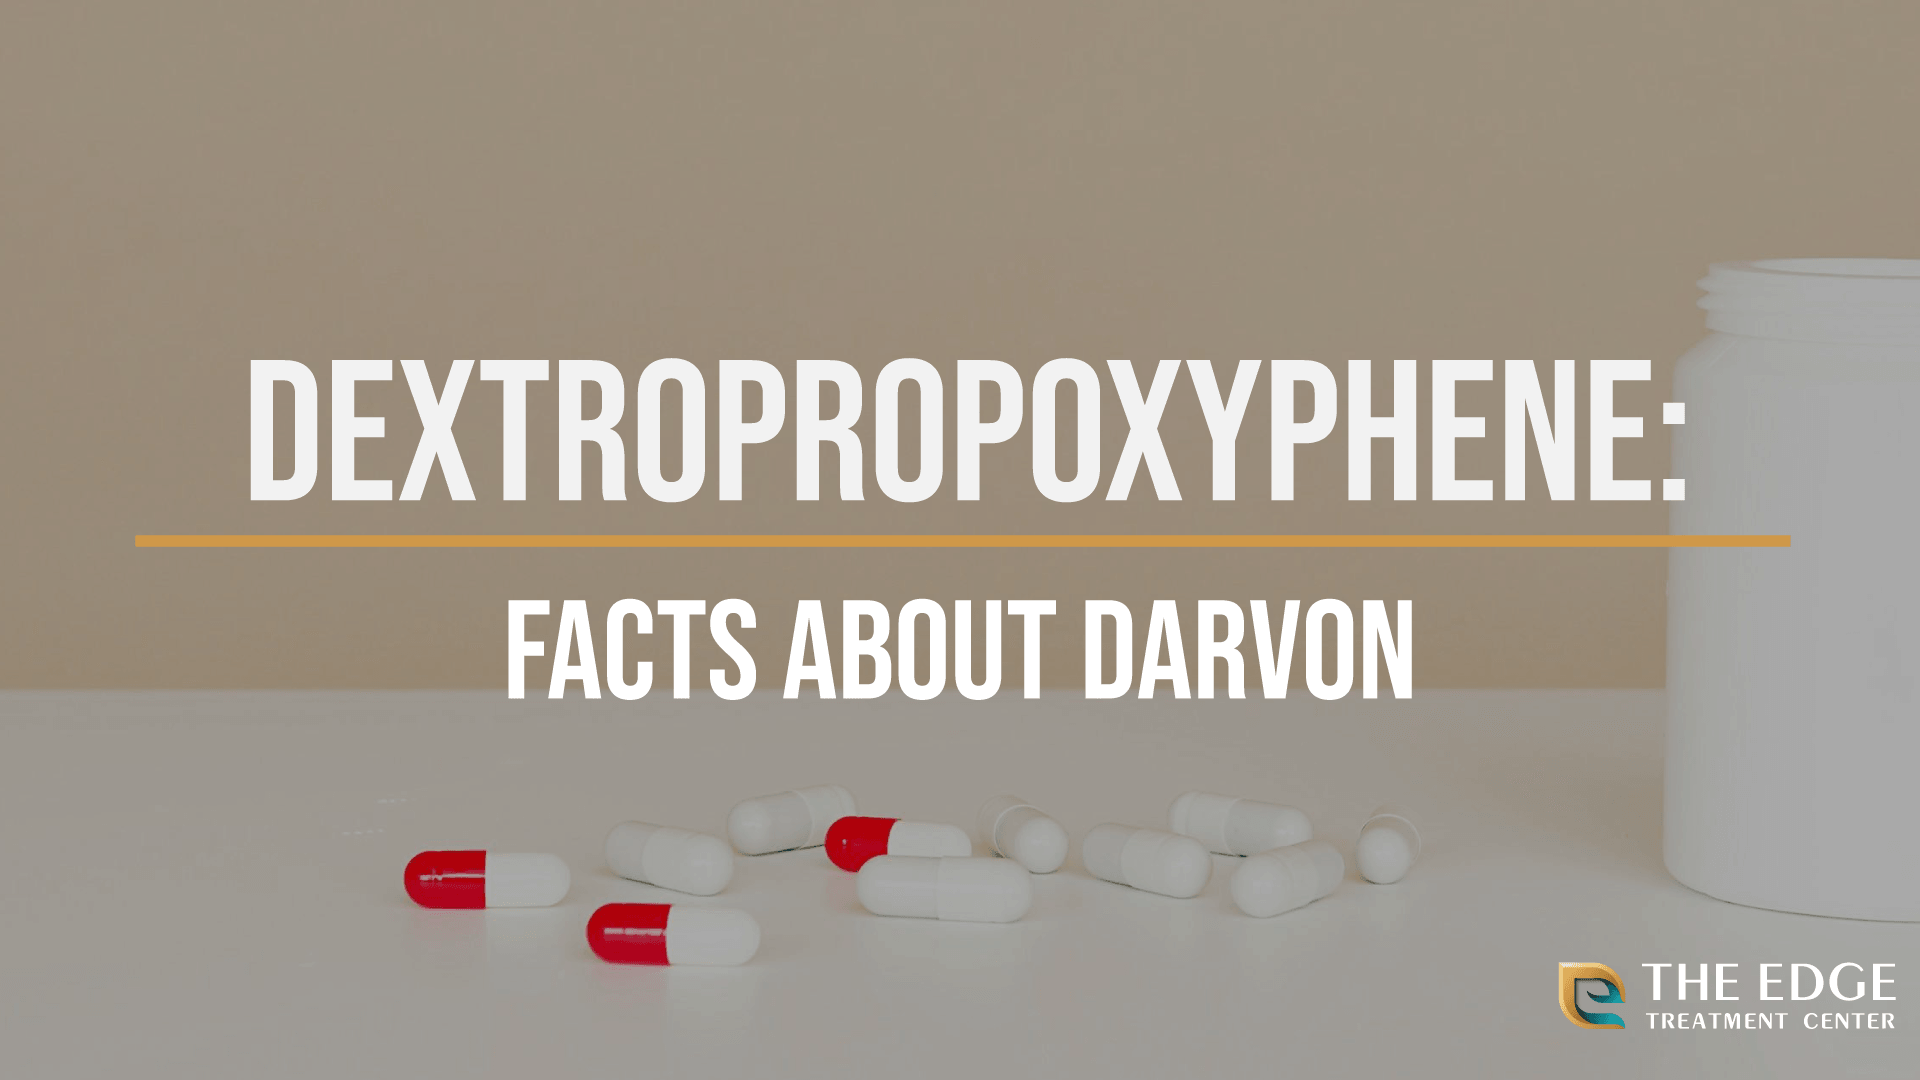 What is Dextropropoxyphene?